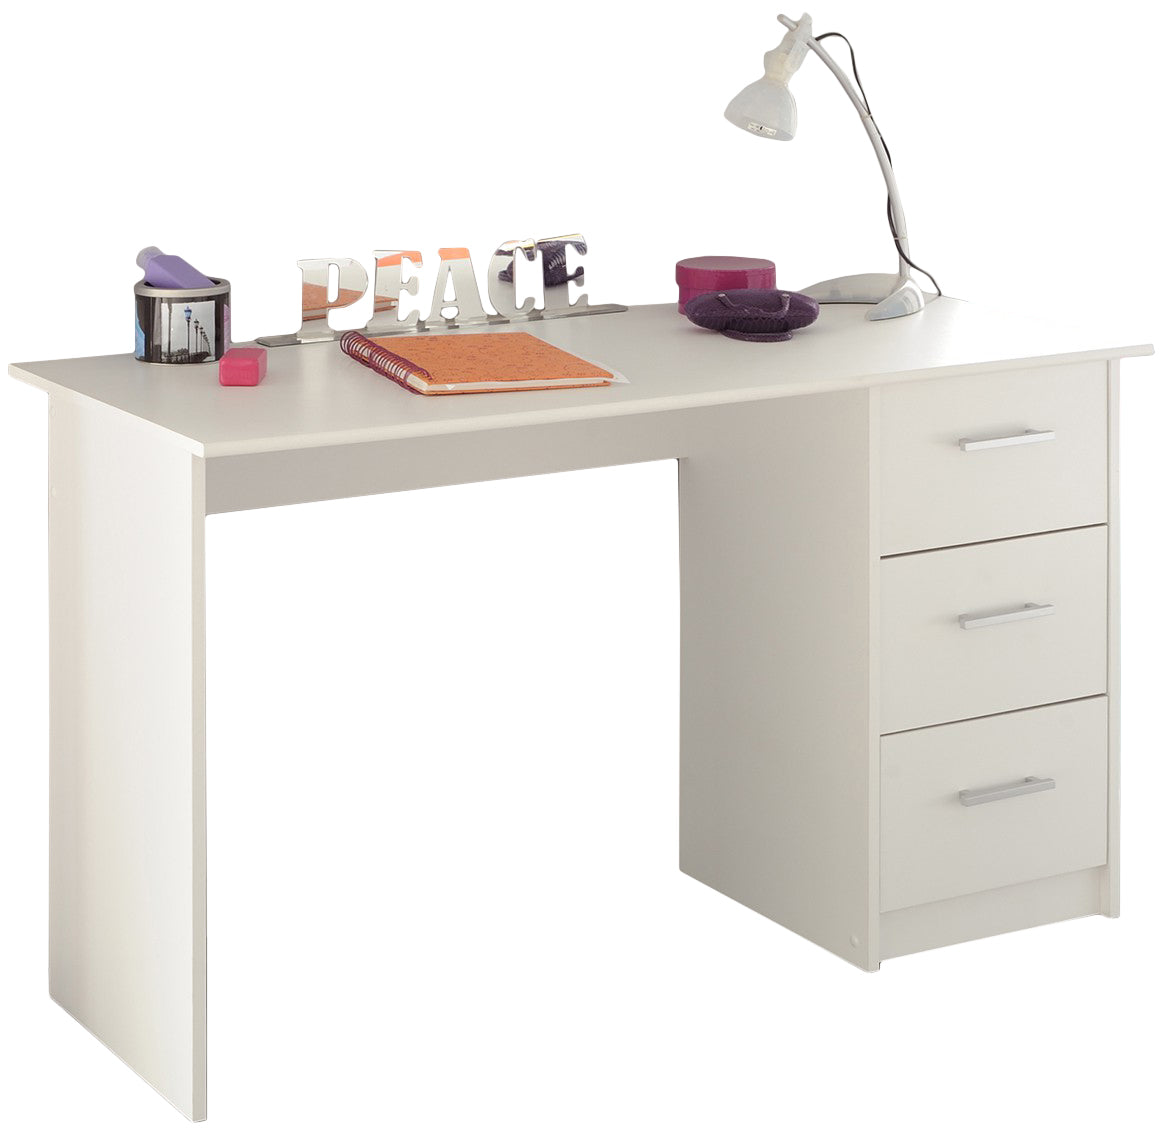 Schreibtisch Infinity 101 mit 3 geräumigen Schubladen 121 x 55 cm Parisot weiß